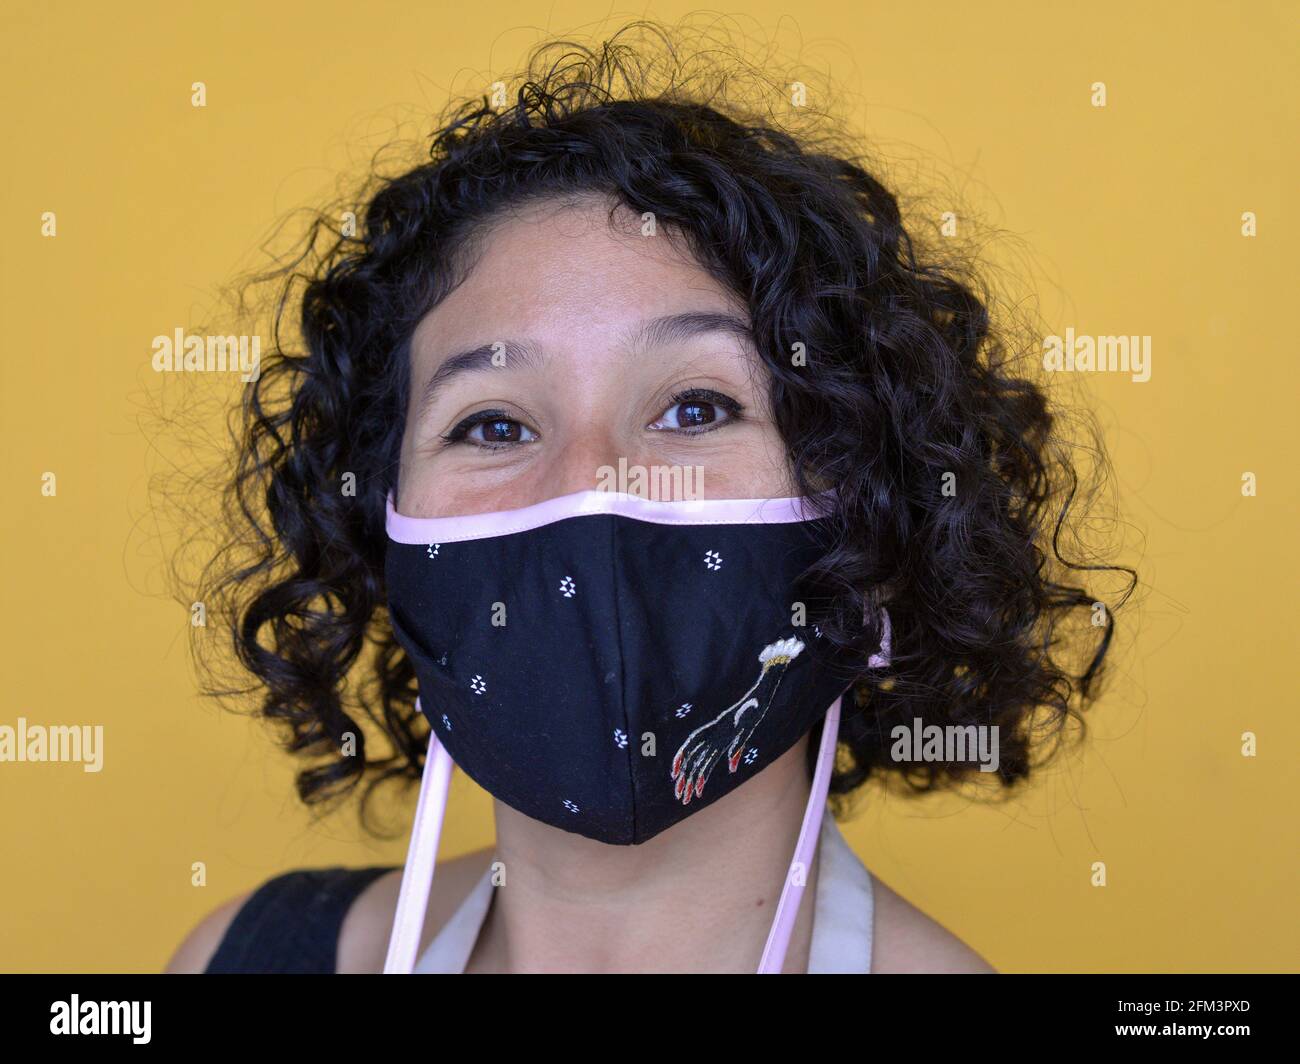 Une jeune femme mexicaine avec des boucles à tire-bouchon porte un masque facial en tissu non médical élégant pendant la pandémie mondiale de coronavirus et regarde la caméra. Banque D'Images